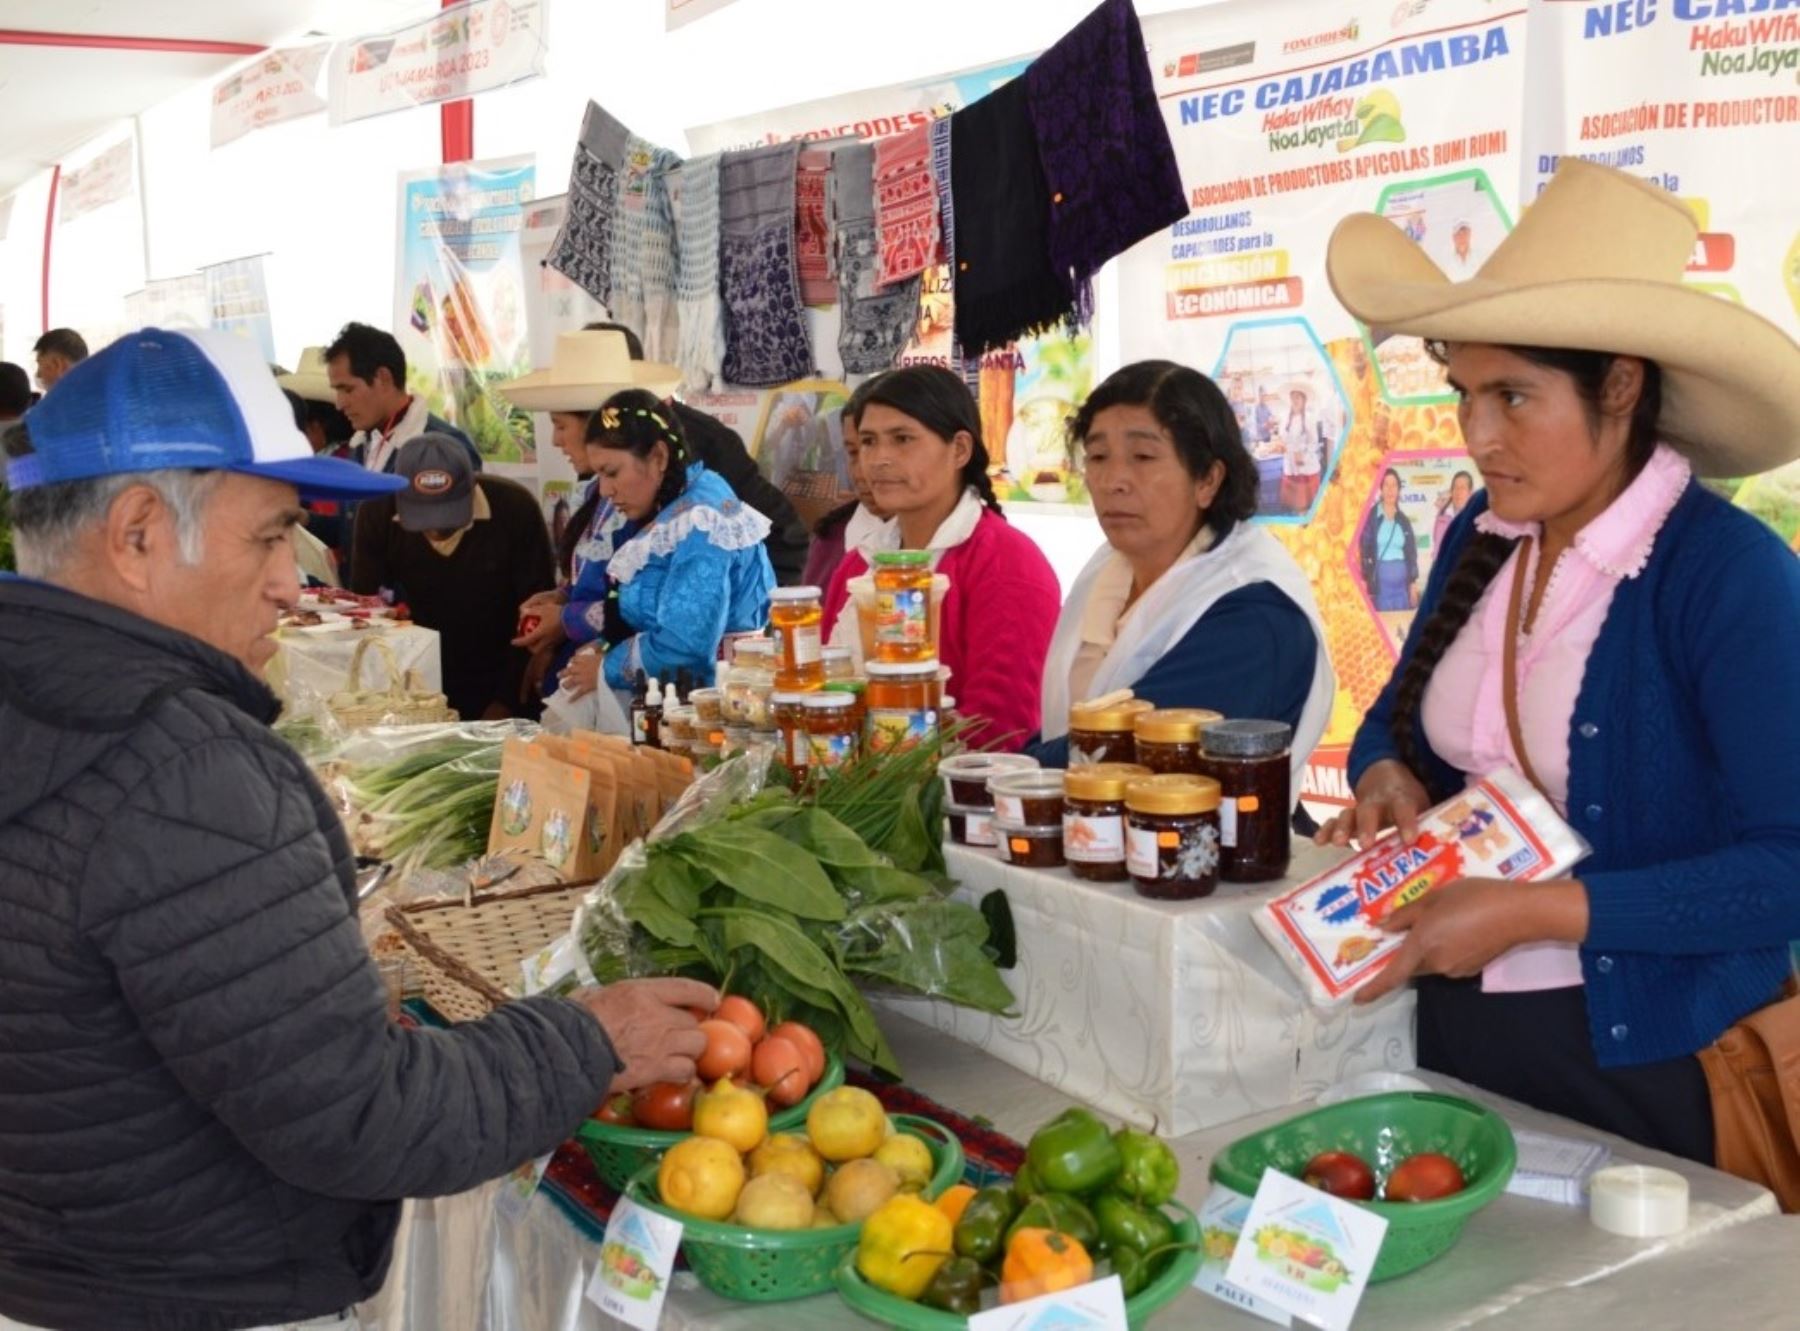 Más de 80 emprendedores rurales de Cajamarca reciben certificación de Foncodes que lo respaldan para realizar pequeños negocios. ANDINA/Difusión